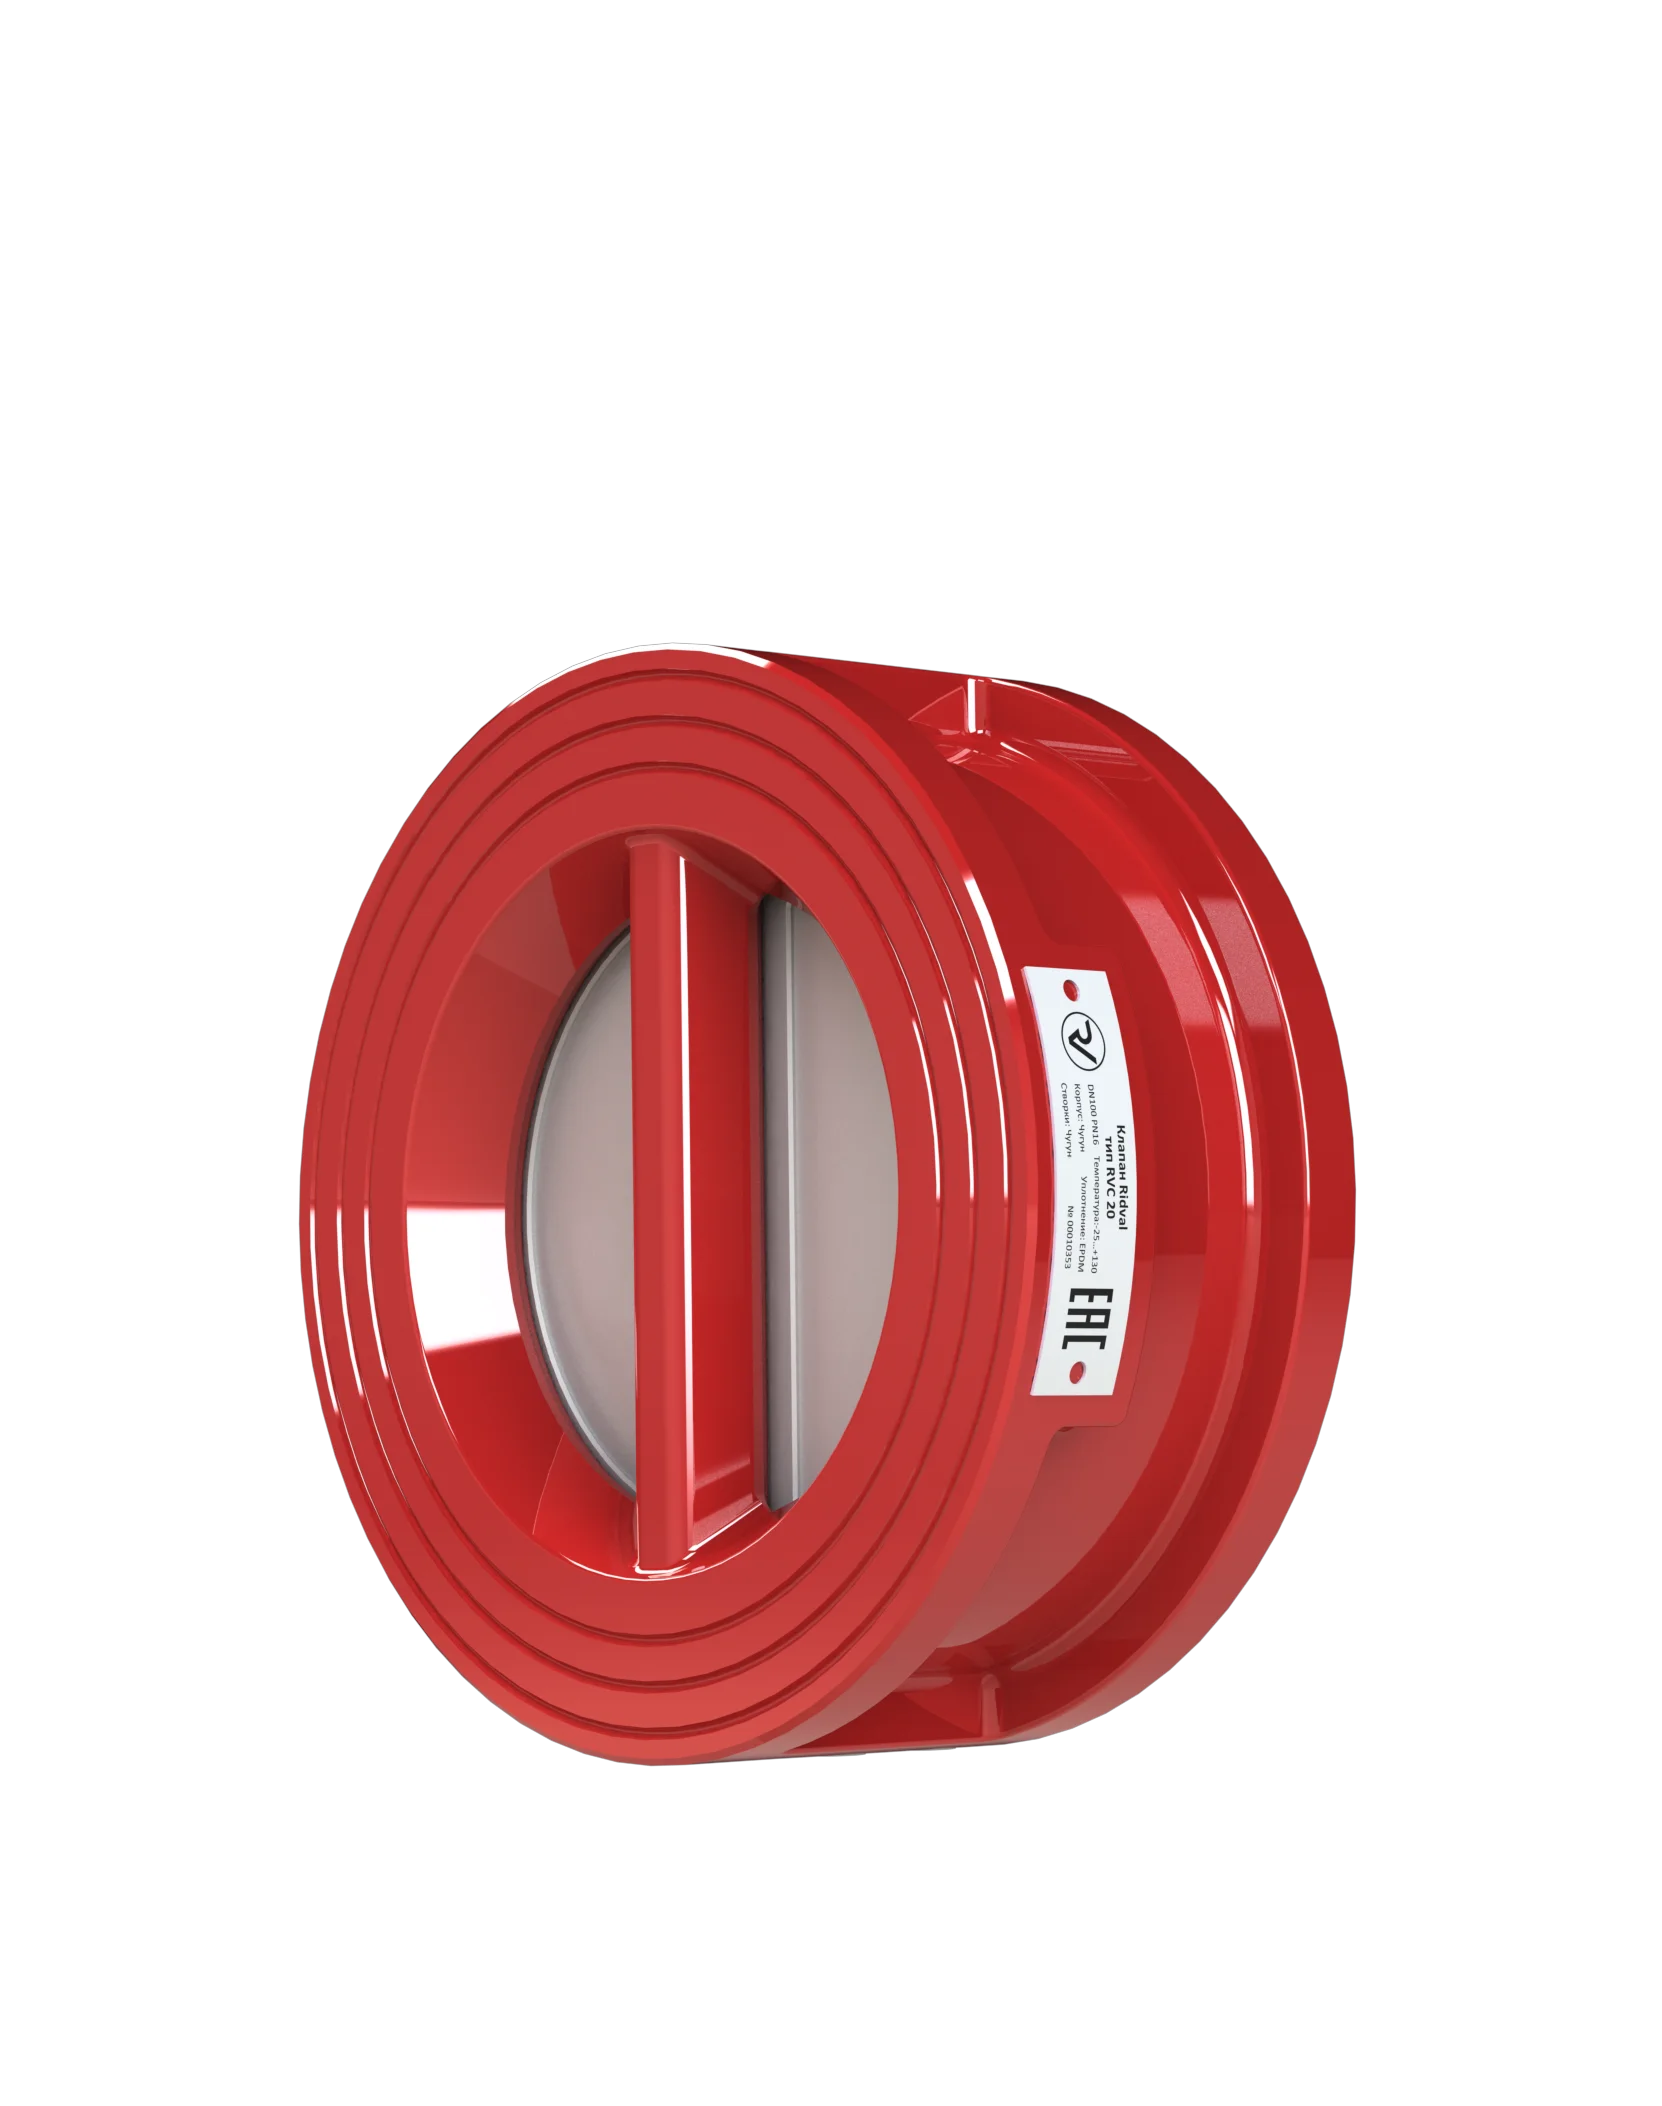 Клапан Ridval тип RVC 20 DN50 PN16, красный